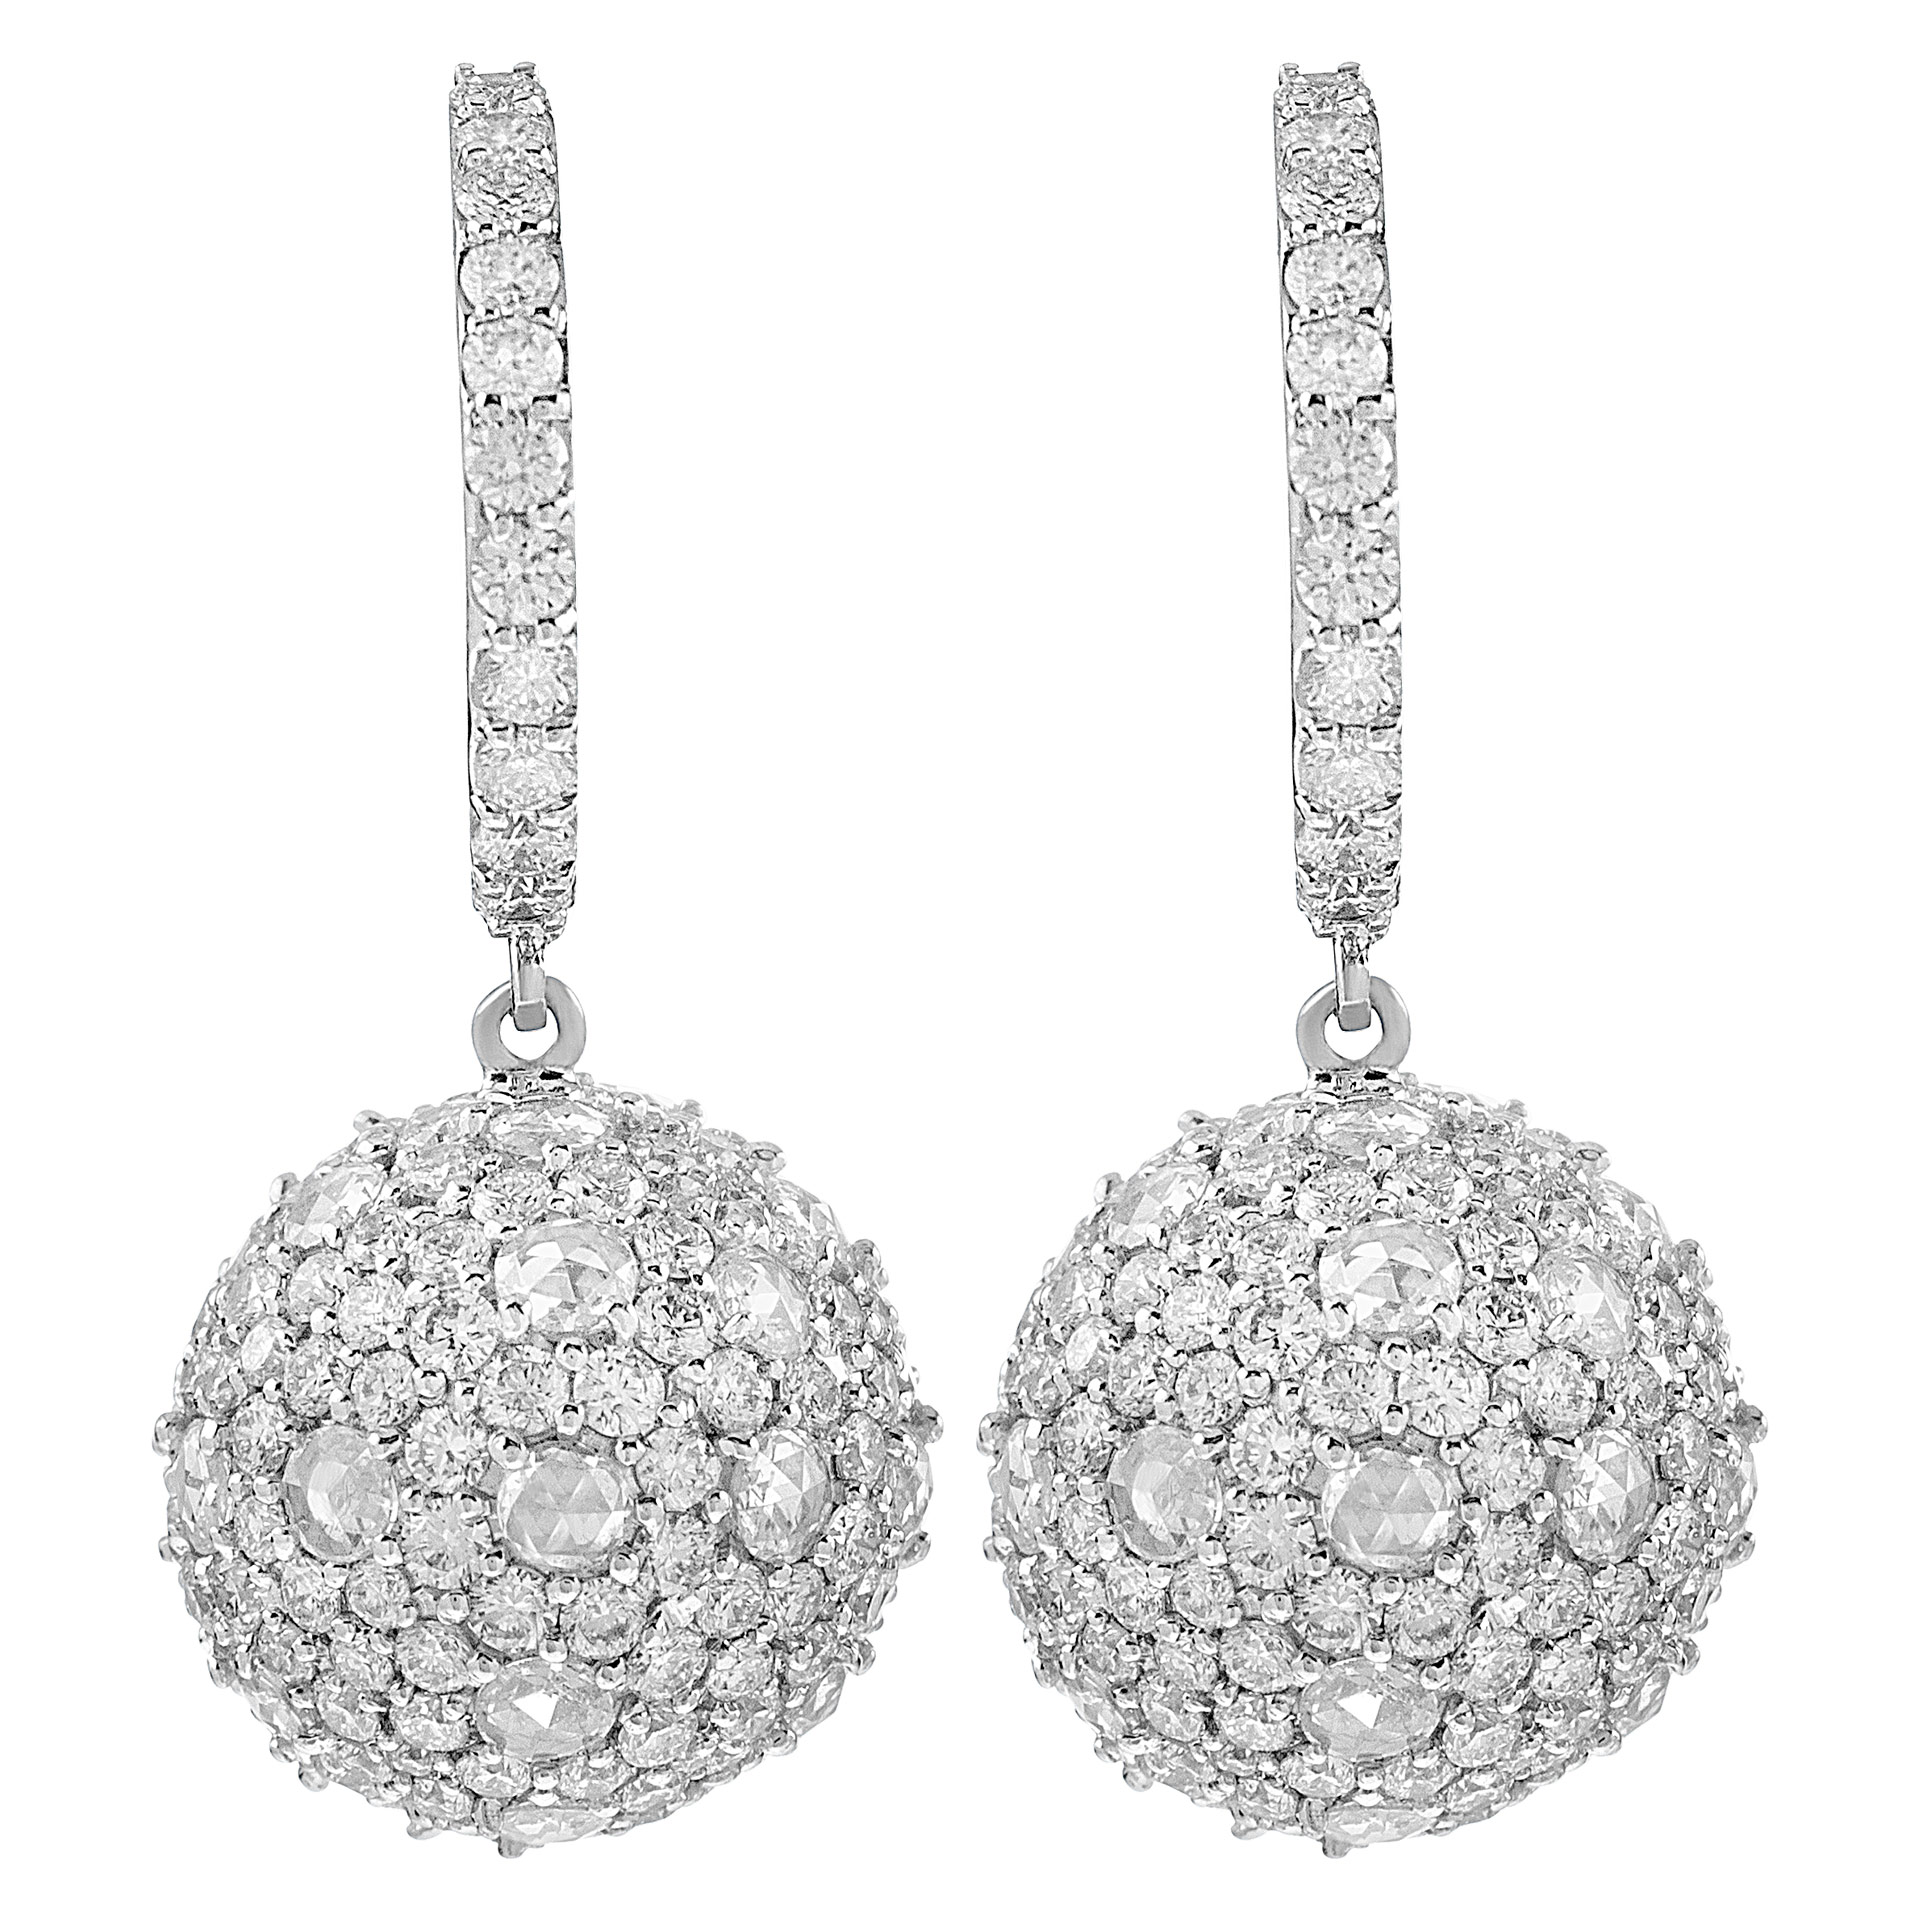 Diamond balls earrings in 18k w/g